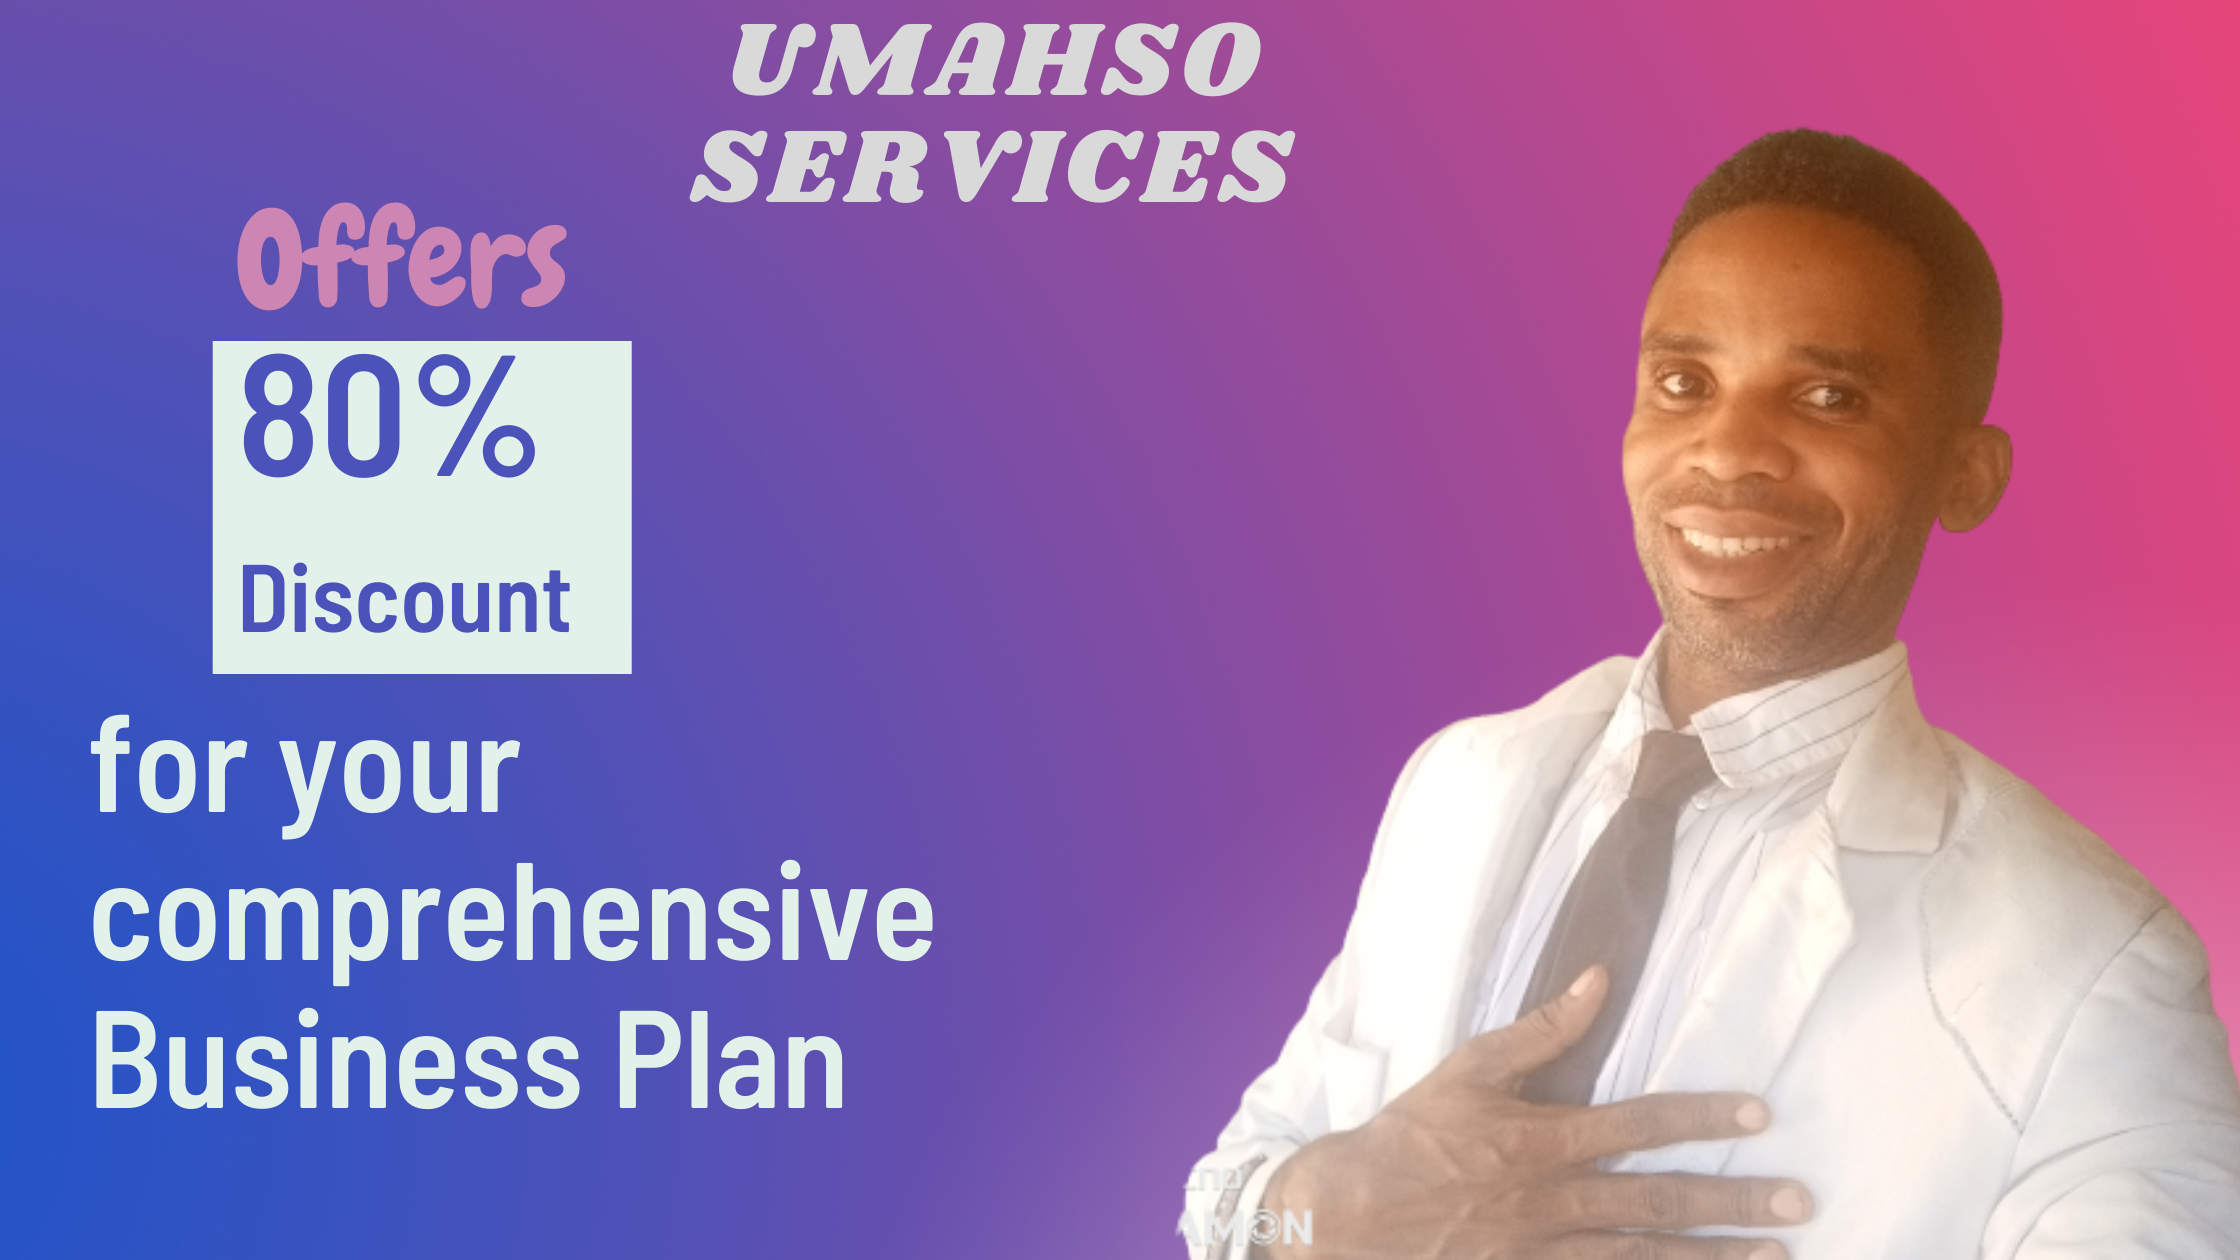 UMAHSO SERVICES